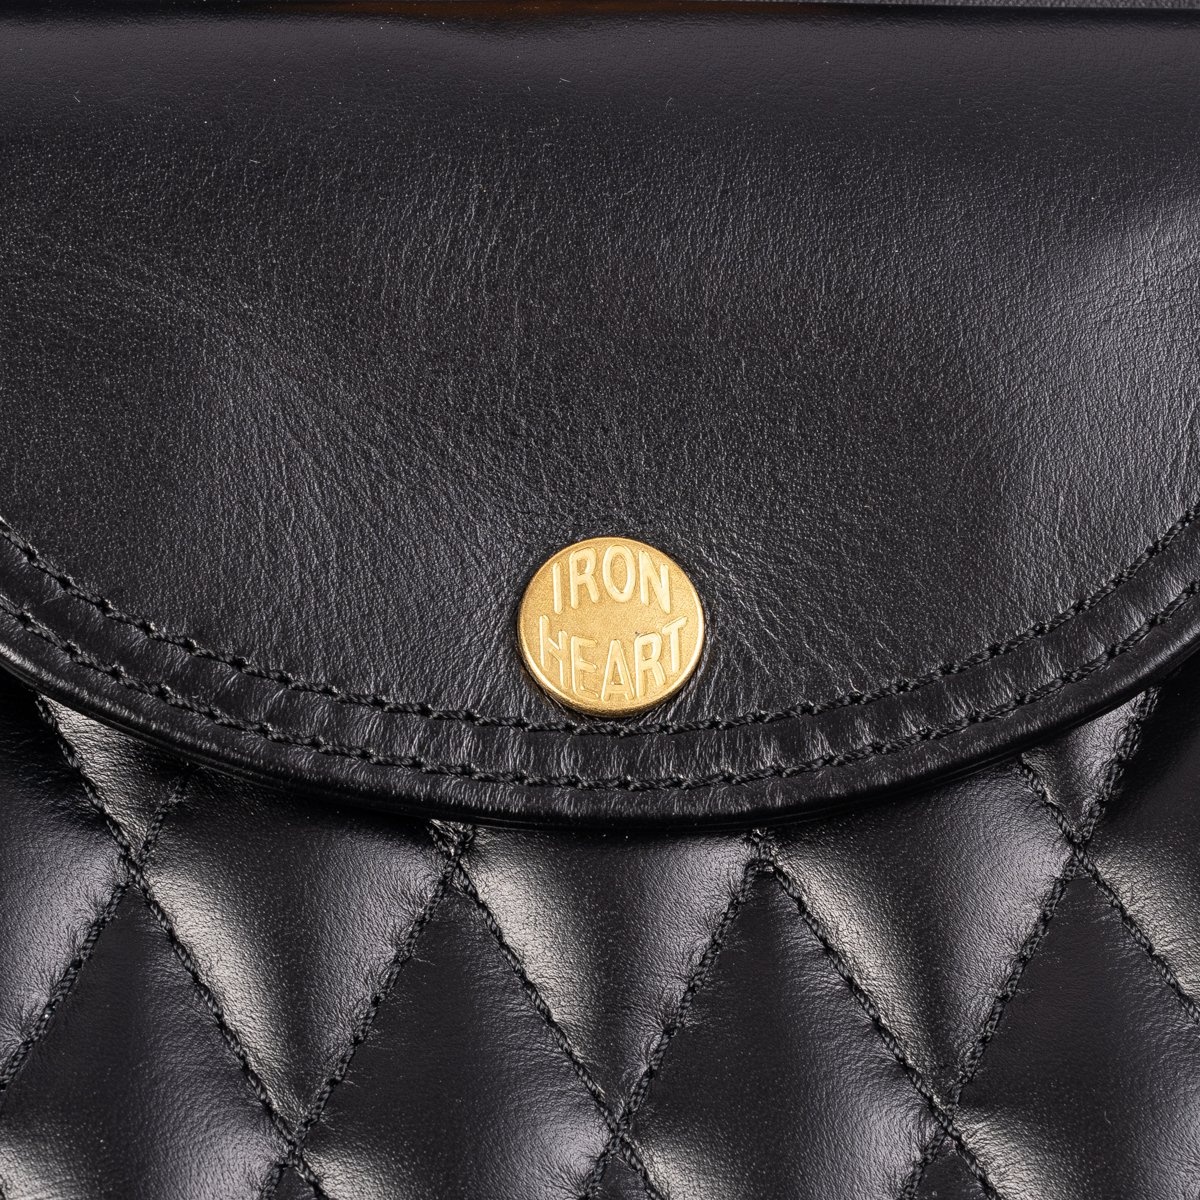 IHE-40-BLK Rectangular Leather Diamond Stitched Shoulder Bag - Black - 10